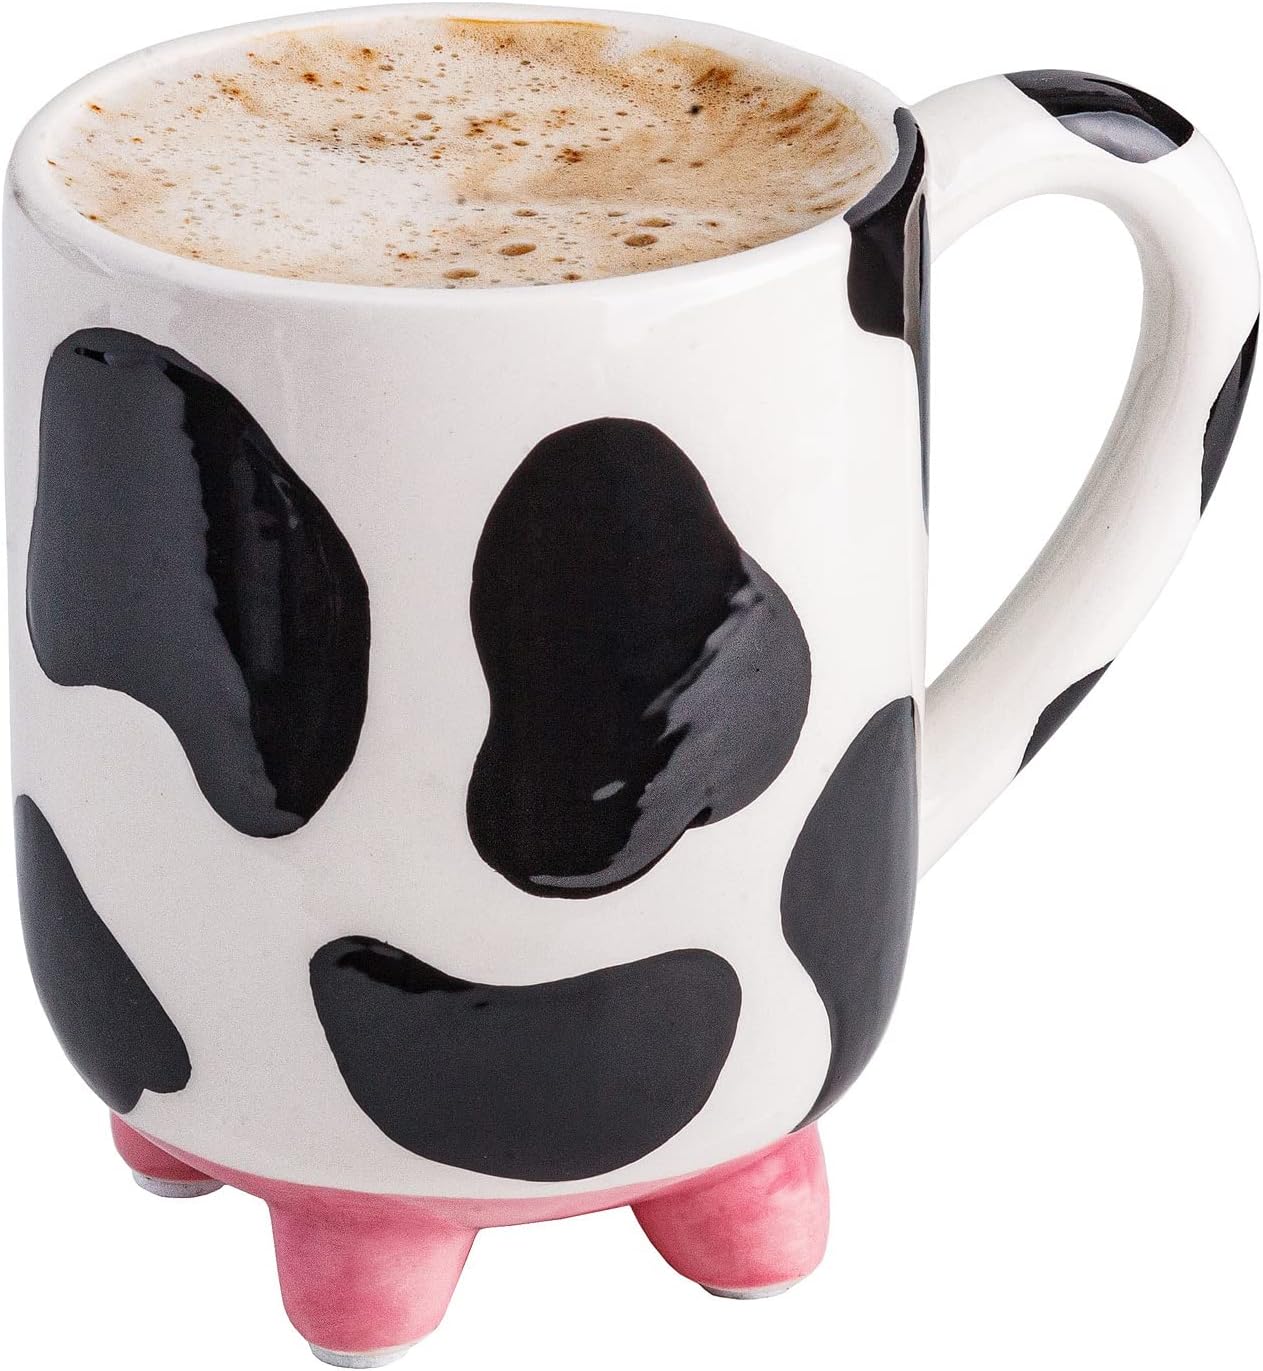 SWEETLO Cow Coffee Mug Review